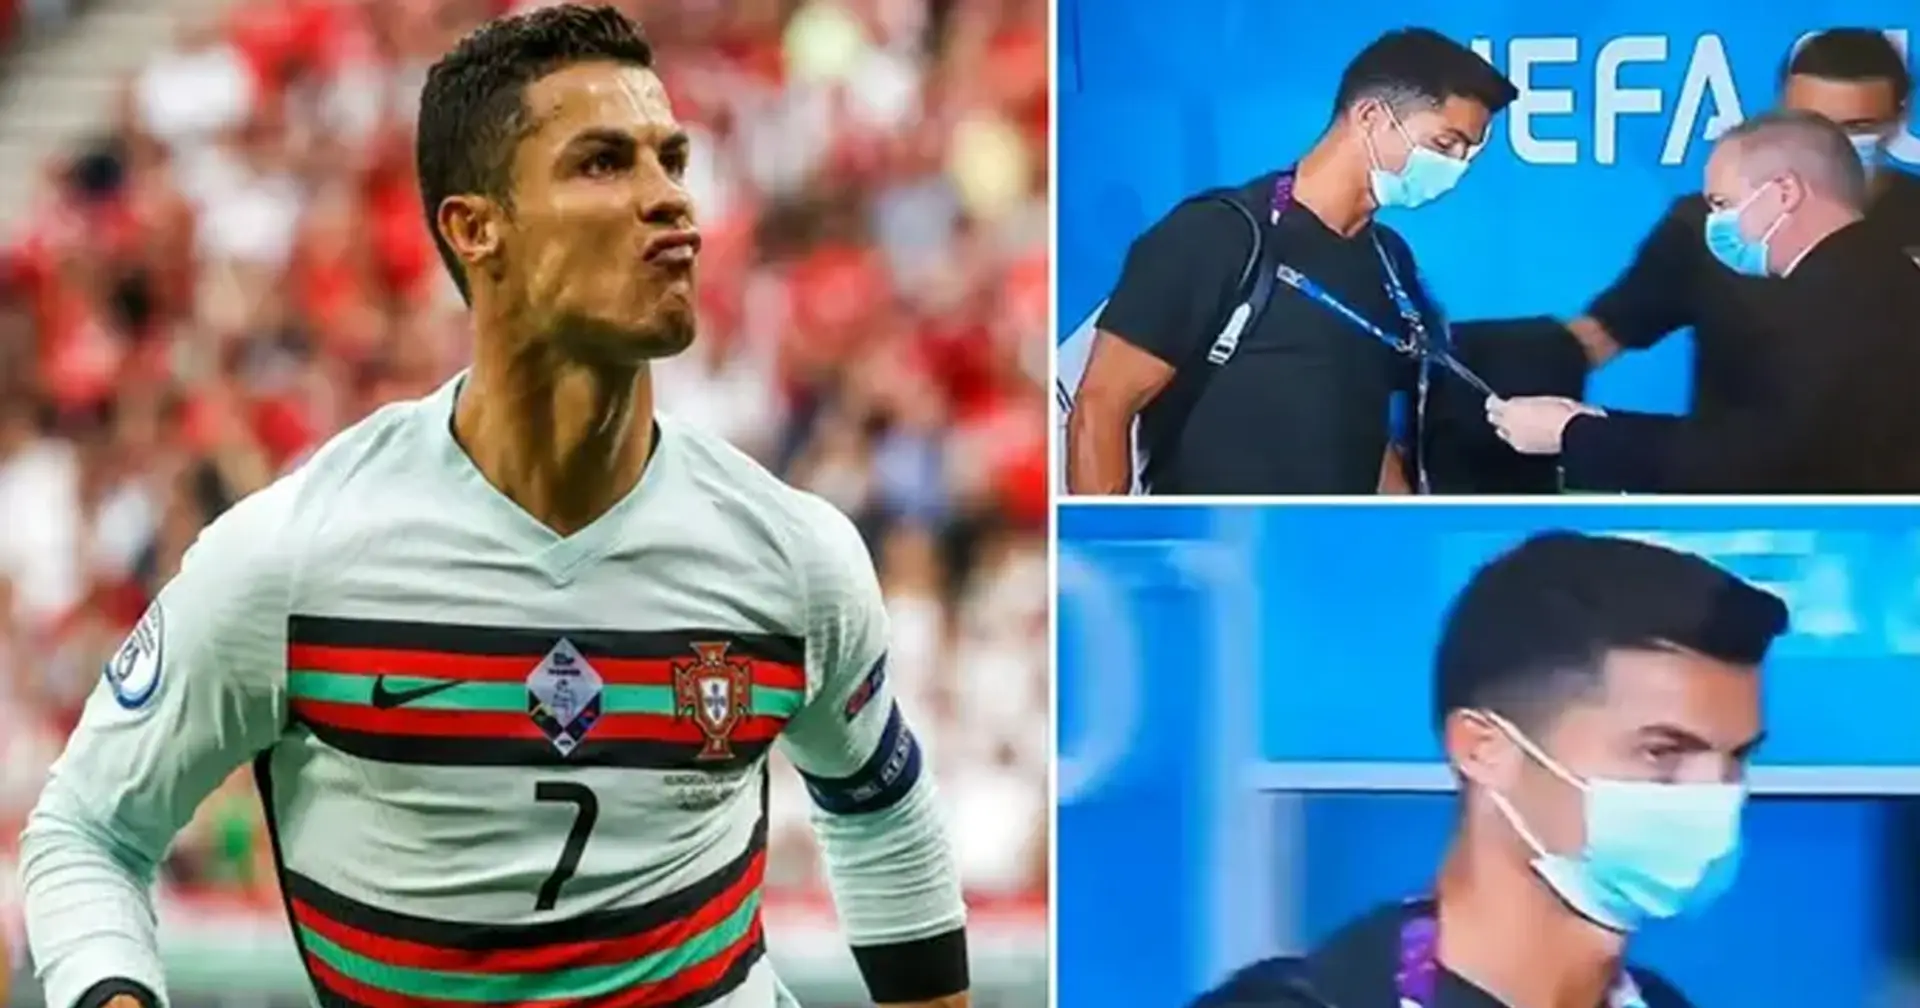 '¿Quién eres?': La seguridad húngara revisa la identificación de Cristiano Ronaldo con la energía de un portero de club nocturno